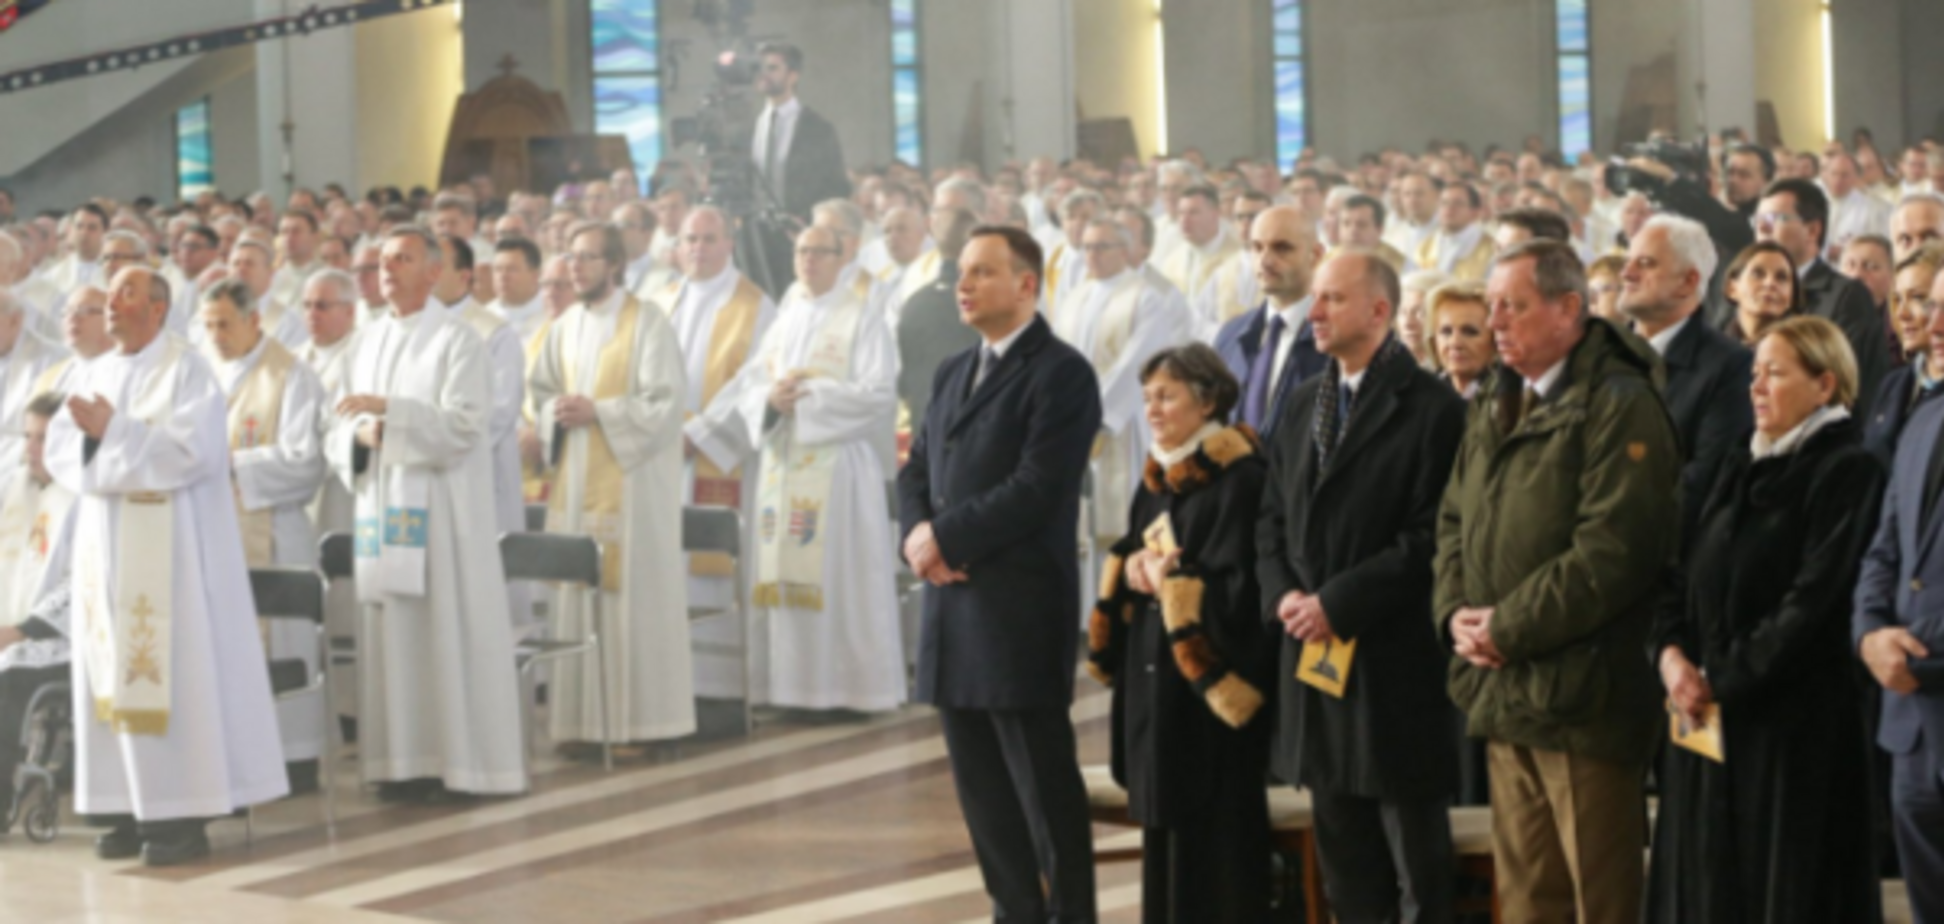 Иисуса Христа официально объявили королем Польши: опубликованы фото